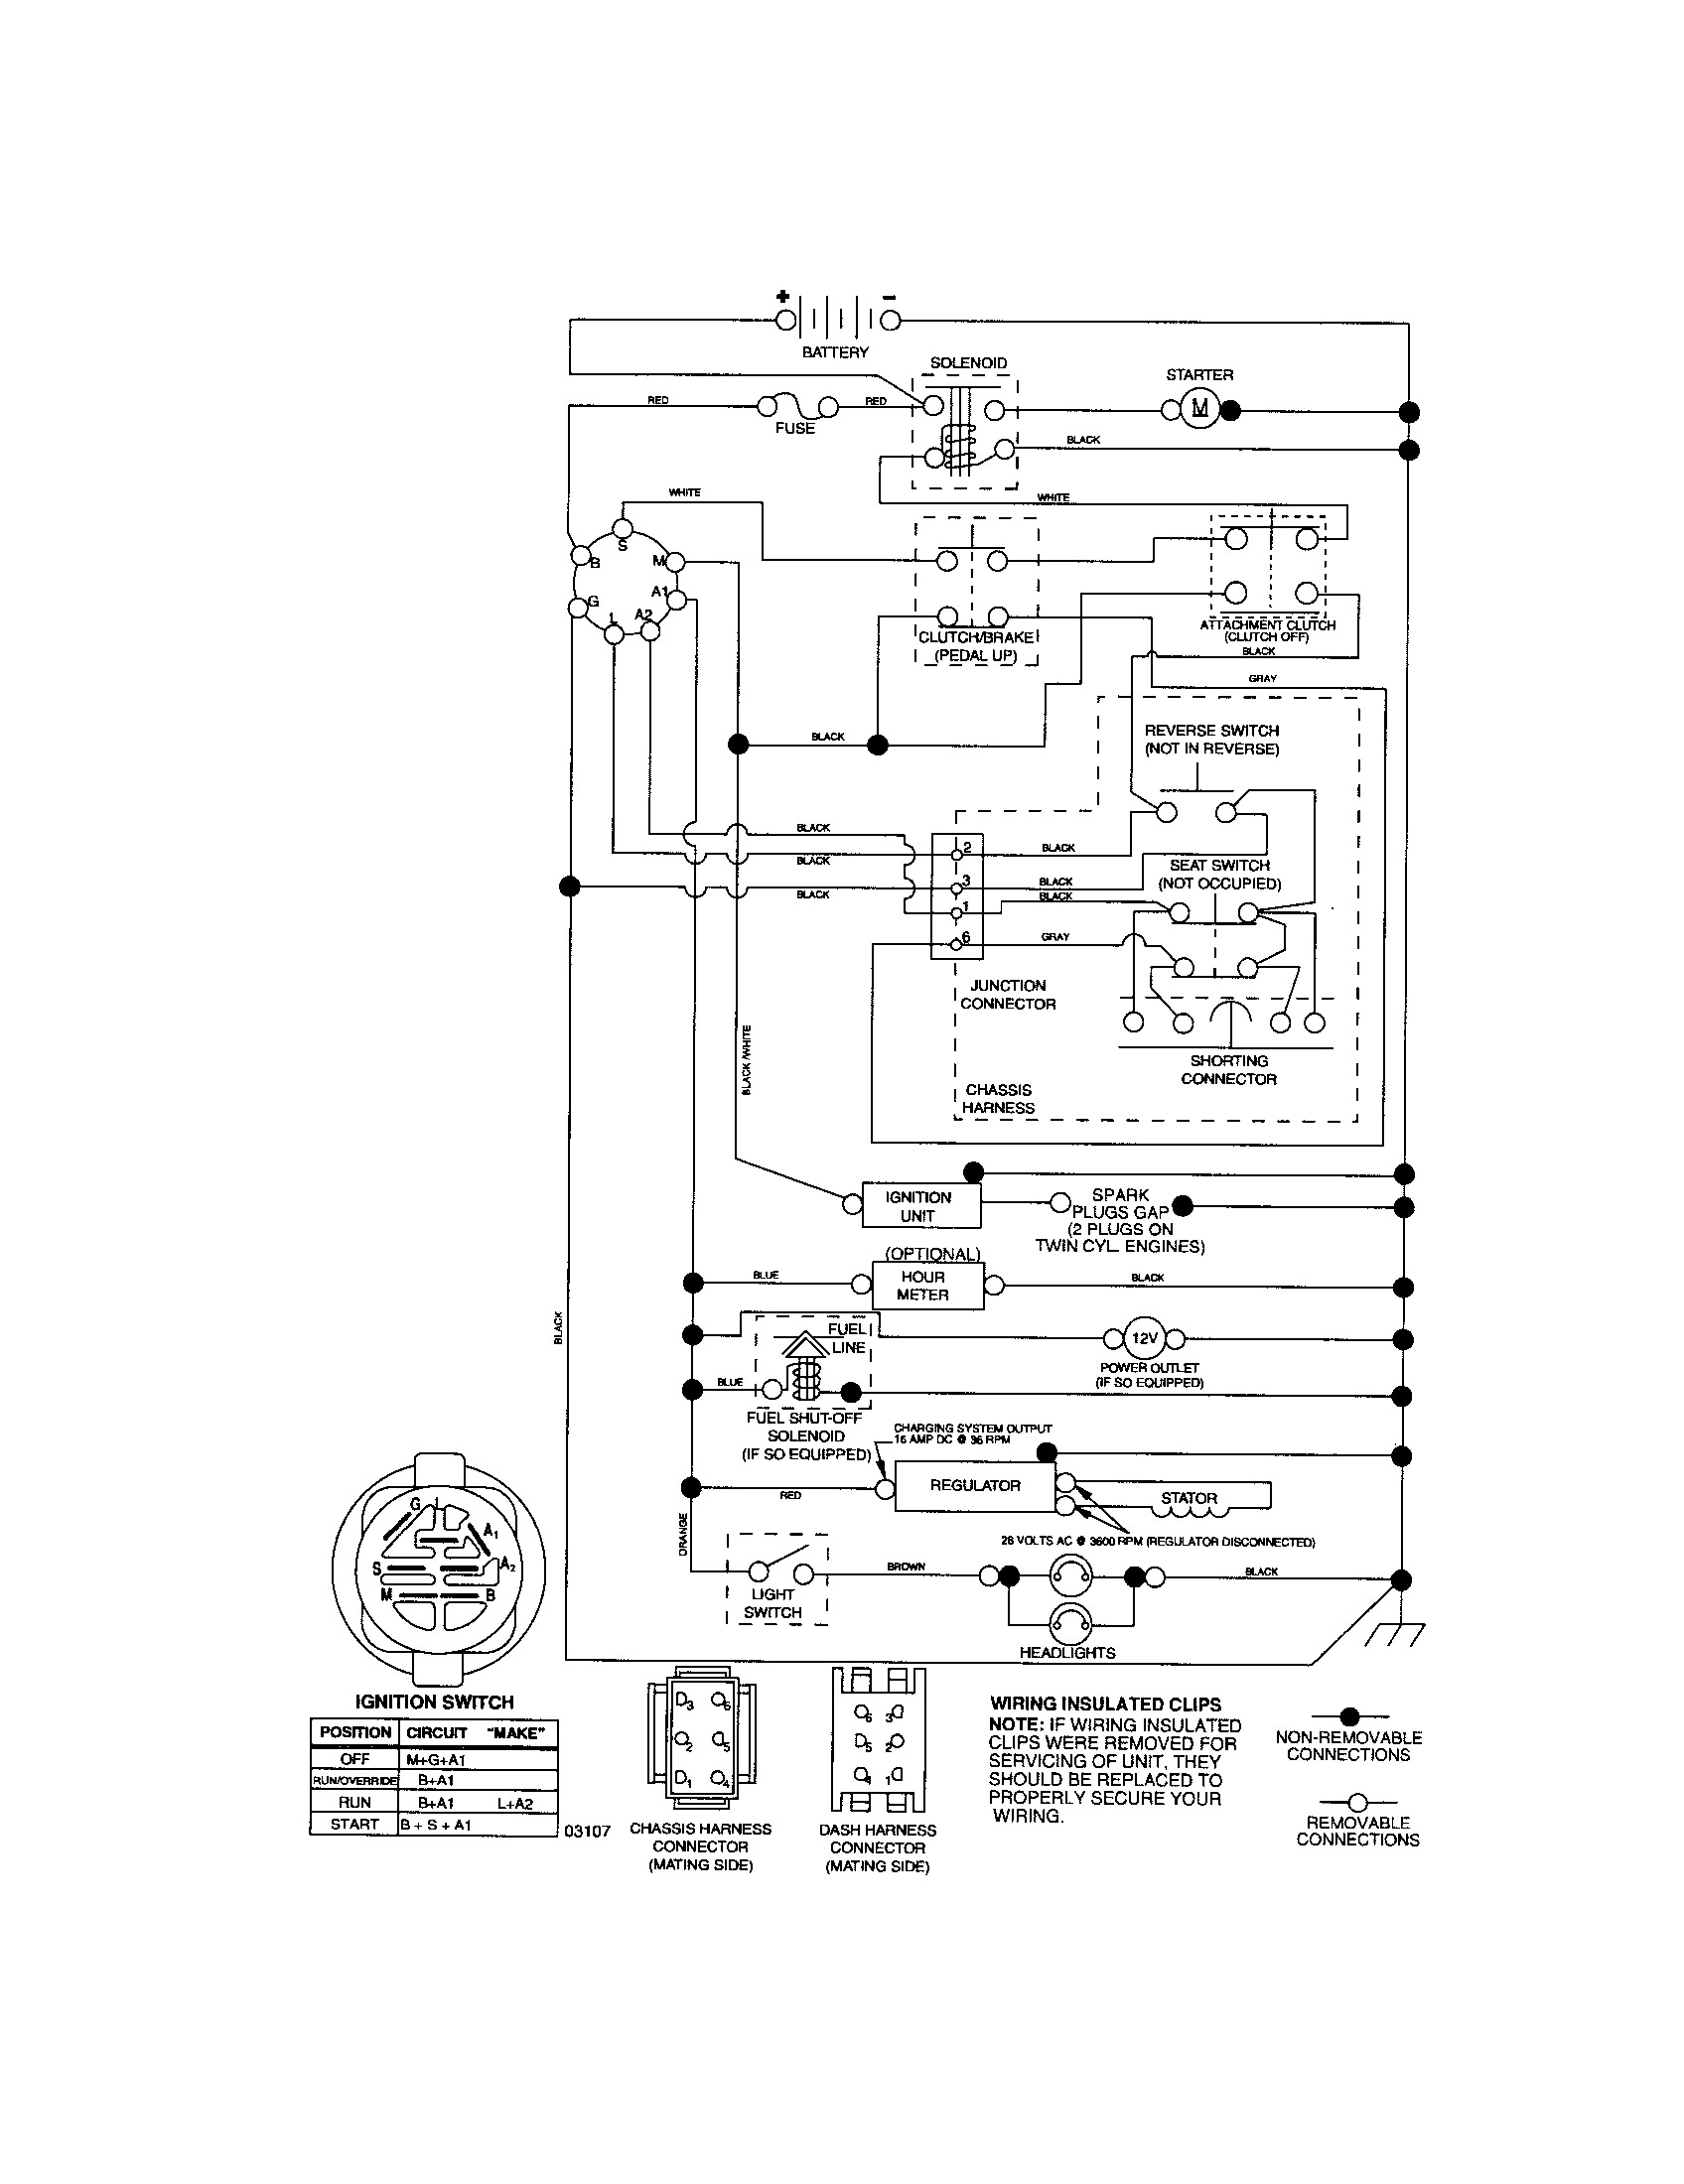 Craftsman Lawn Mower Model 917 Wiring Diagram Download Wiring Diagram